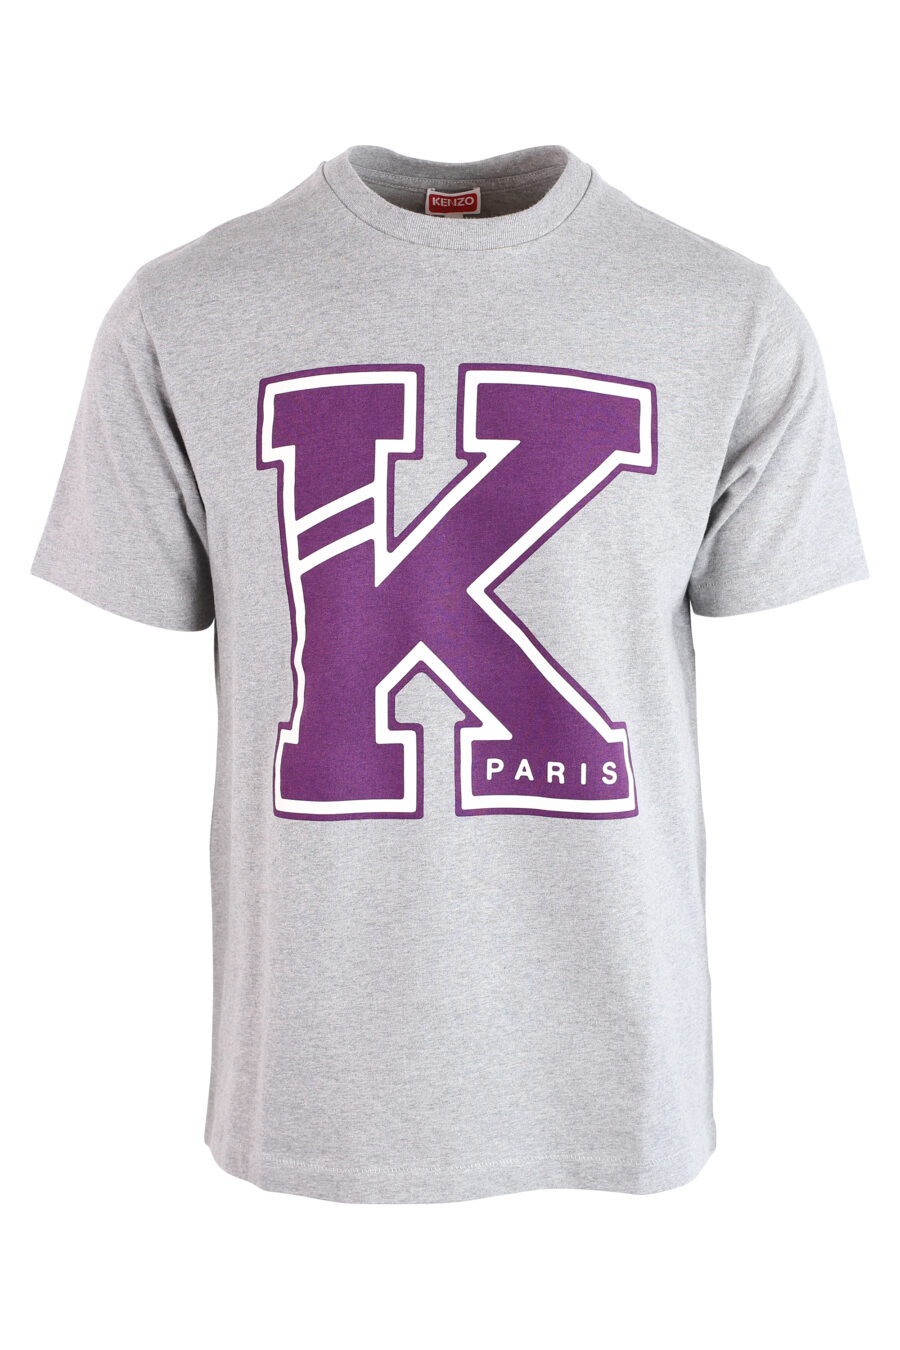 Graues T-Shirt mit violettem "K"-Maxillogramm - IMG 3195